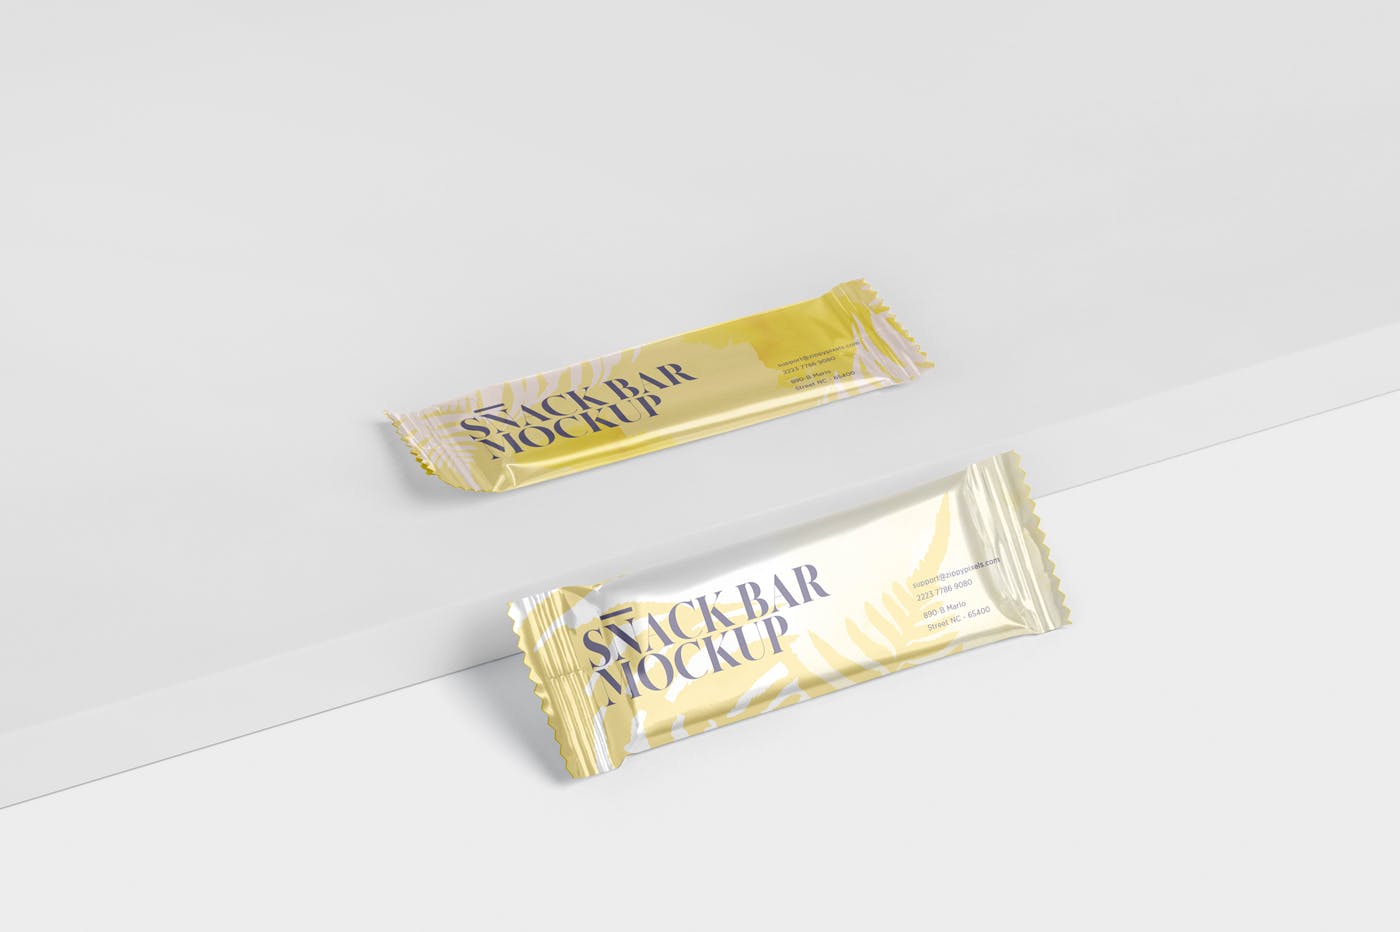 零食糖果包装袋设计效果图素材库精选 Snack Bar Mockup – Slim Rectangular插图(5)